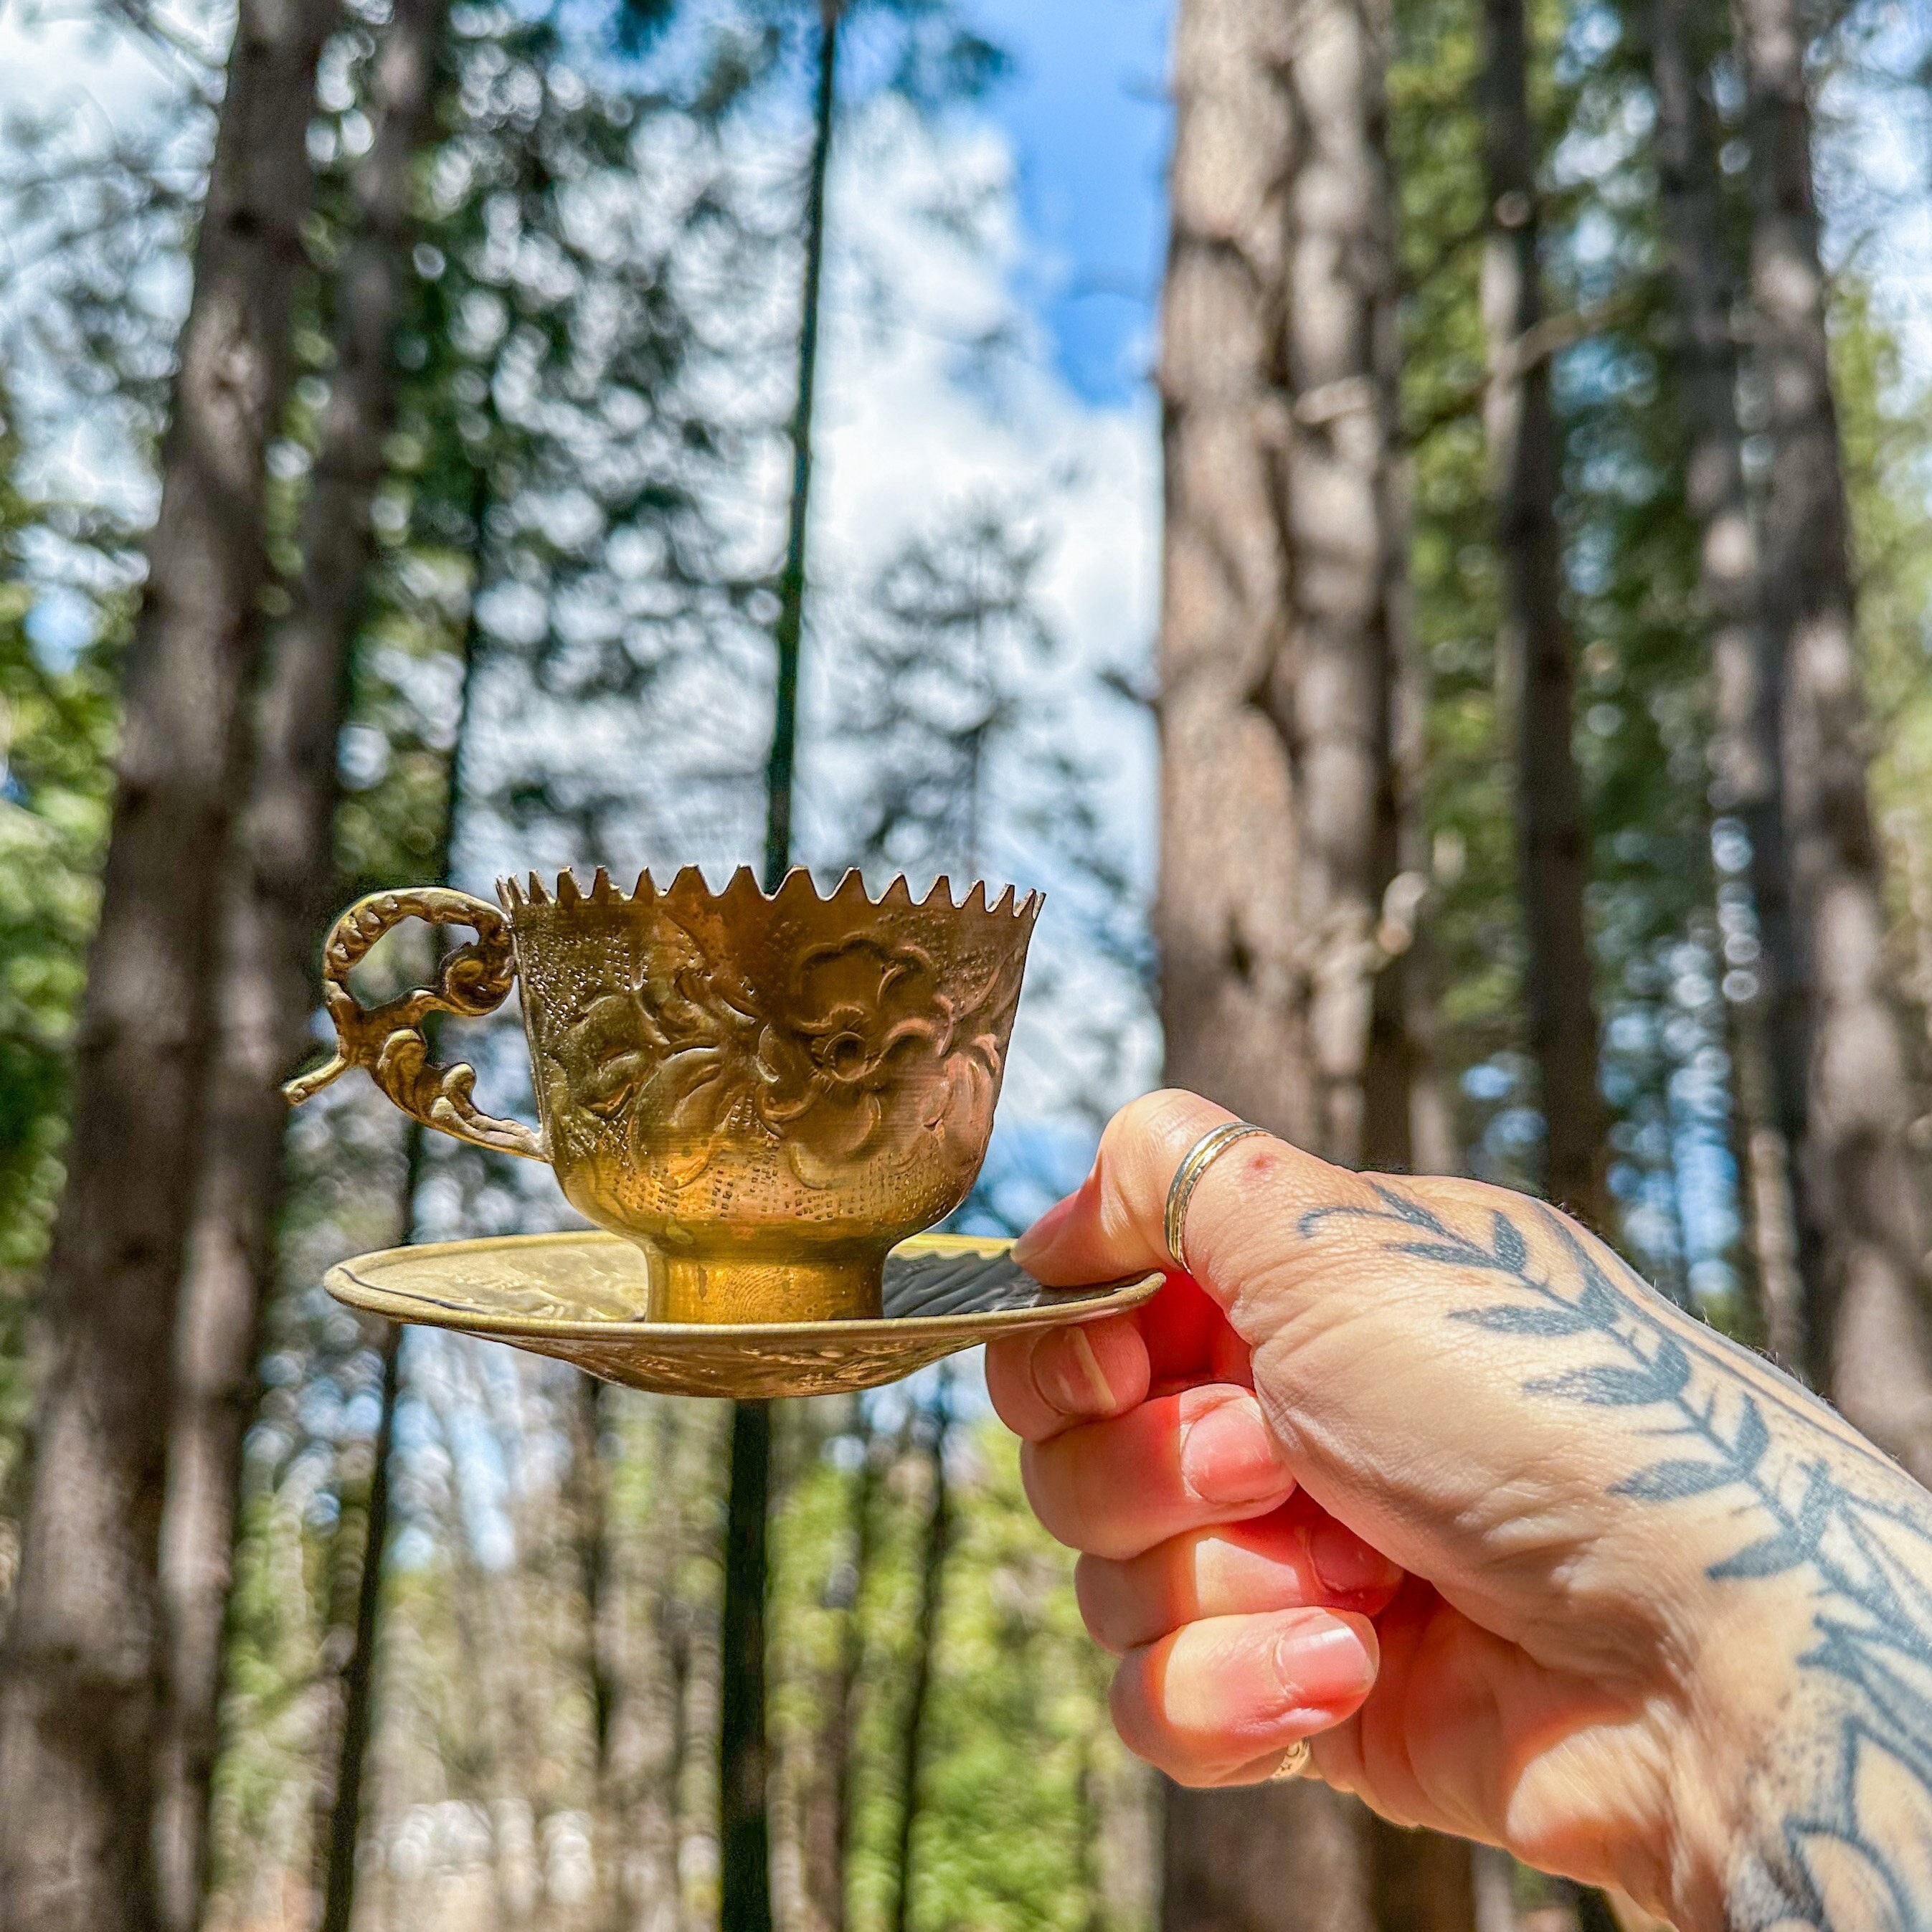 Dabara Set of 4 Brass Tumbler Cup Saucer Filter Coffee Tea Bowl Vintage Cup  Set